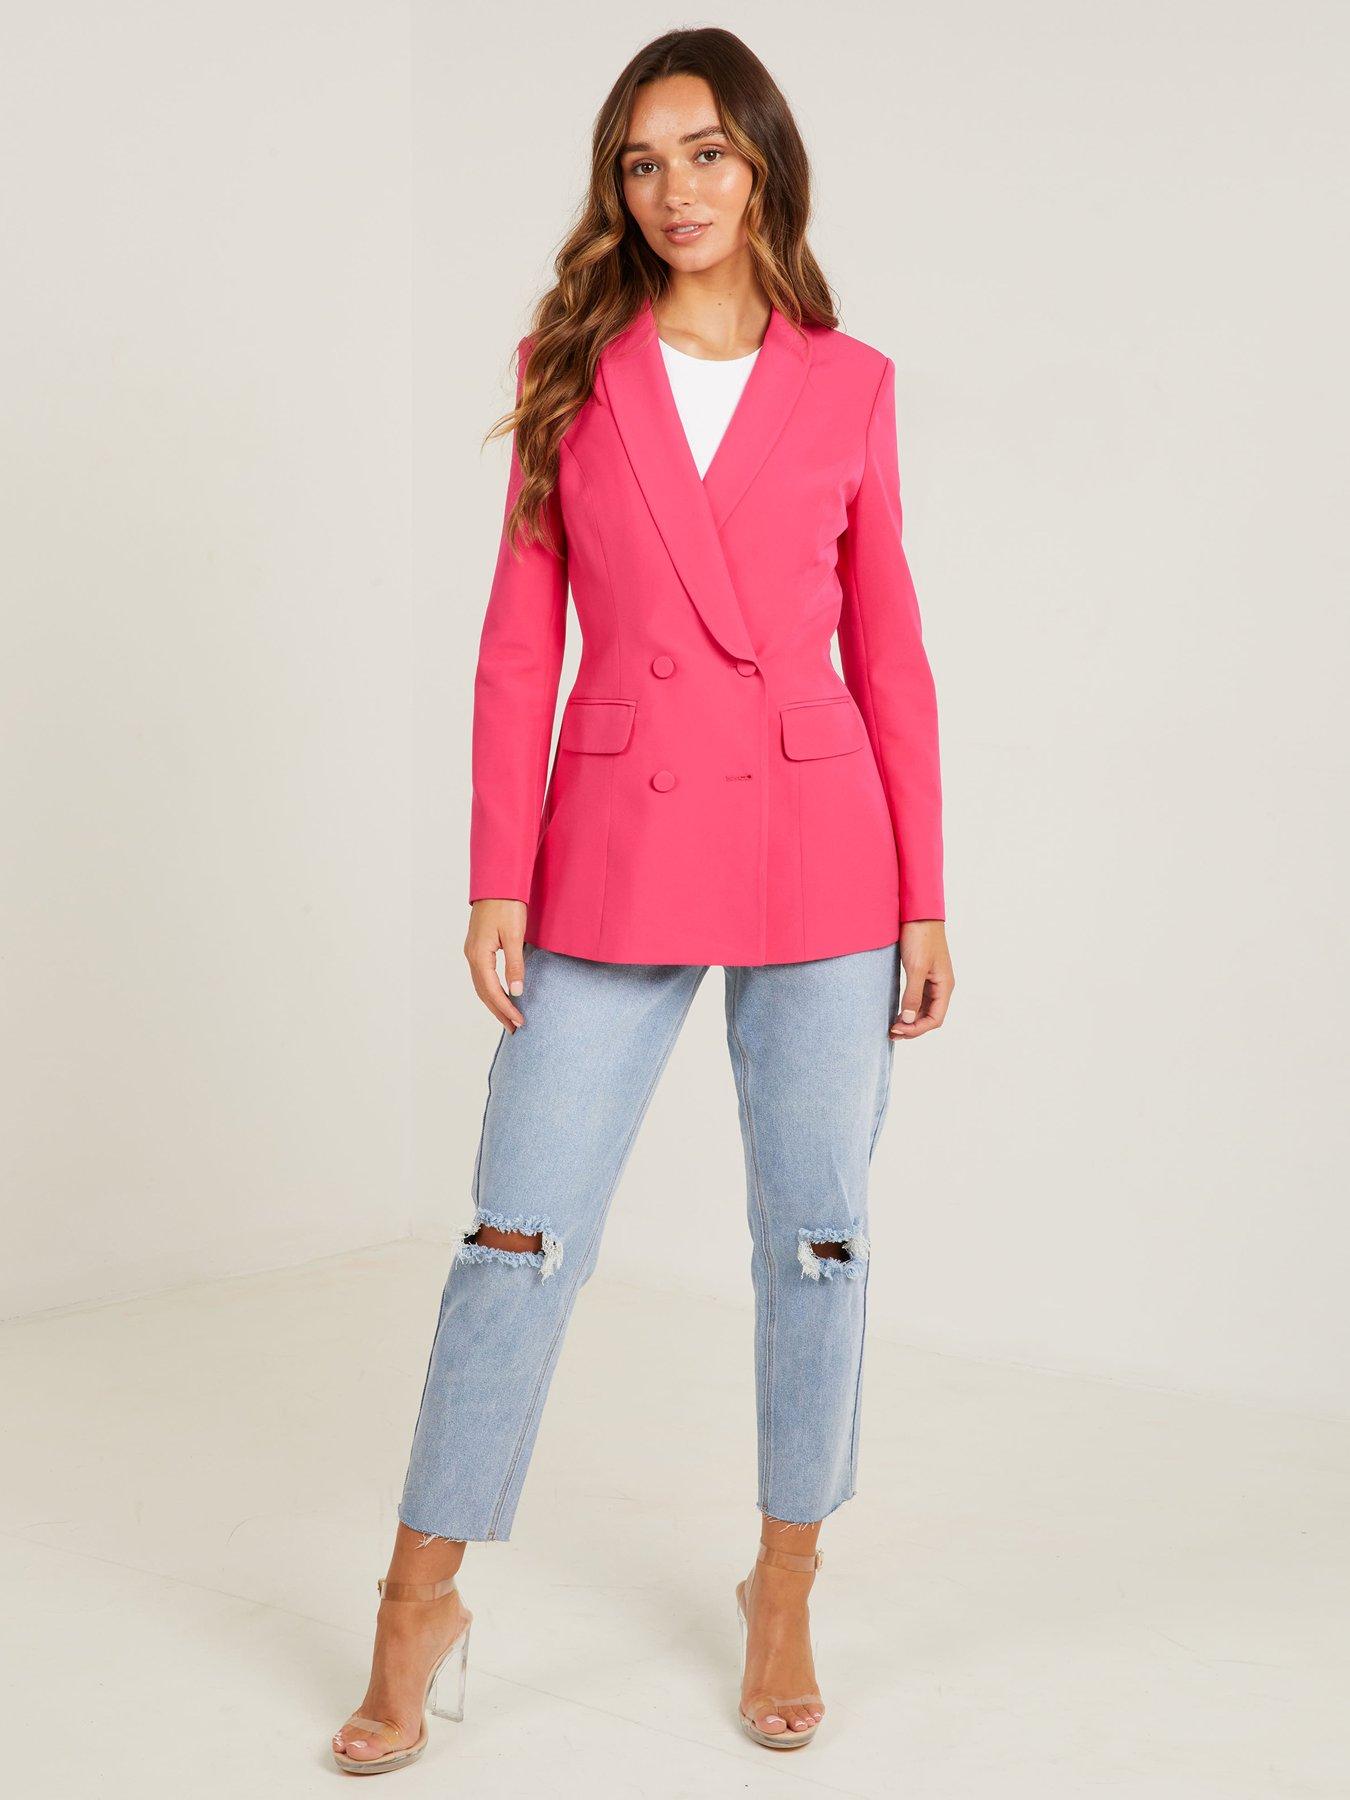  Hot Pink Woven 4 Button Blazer